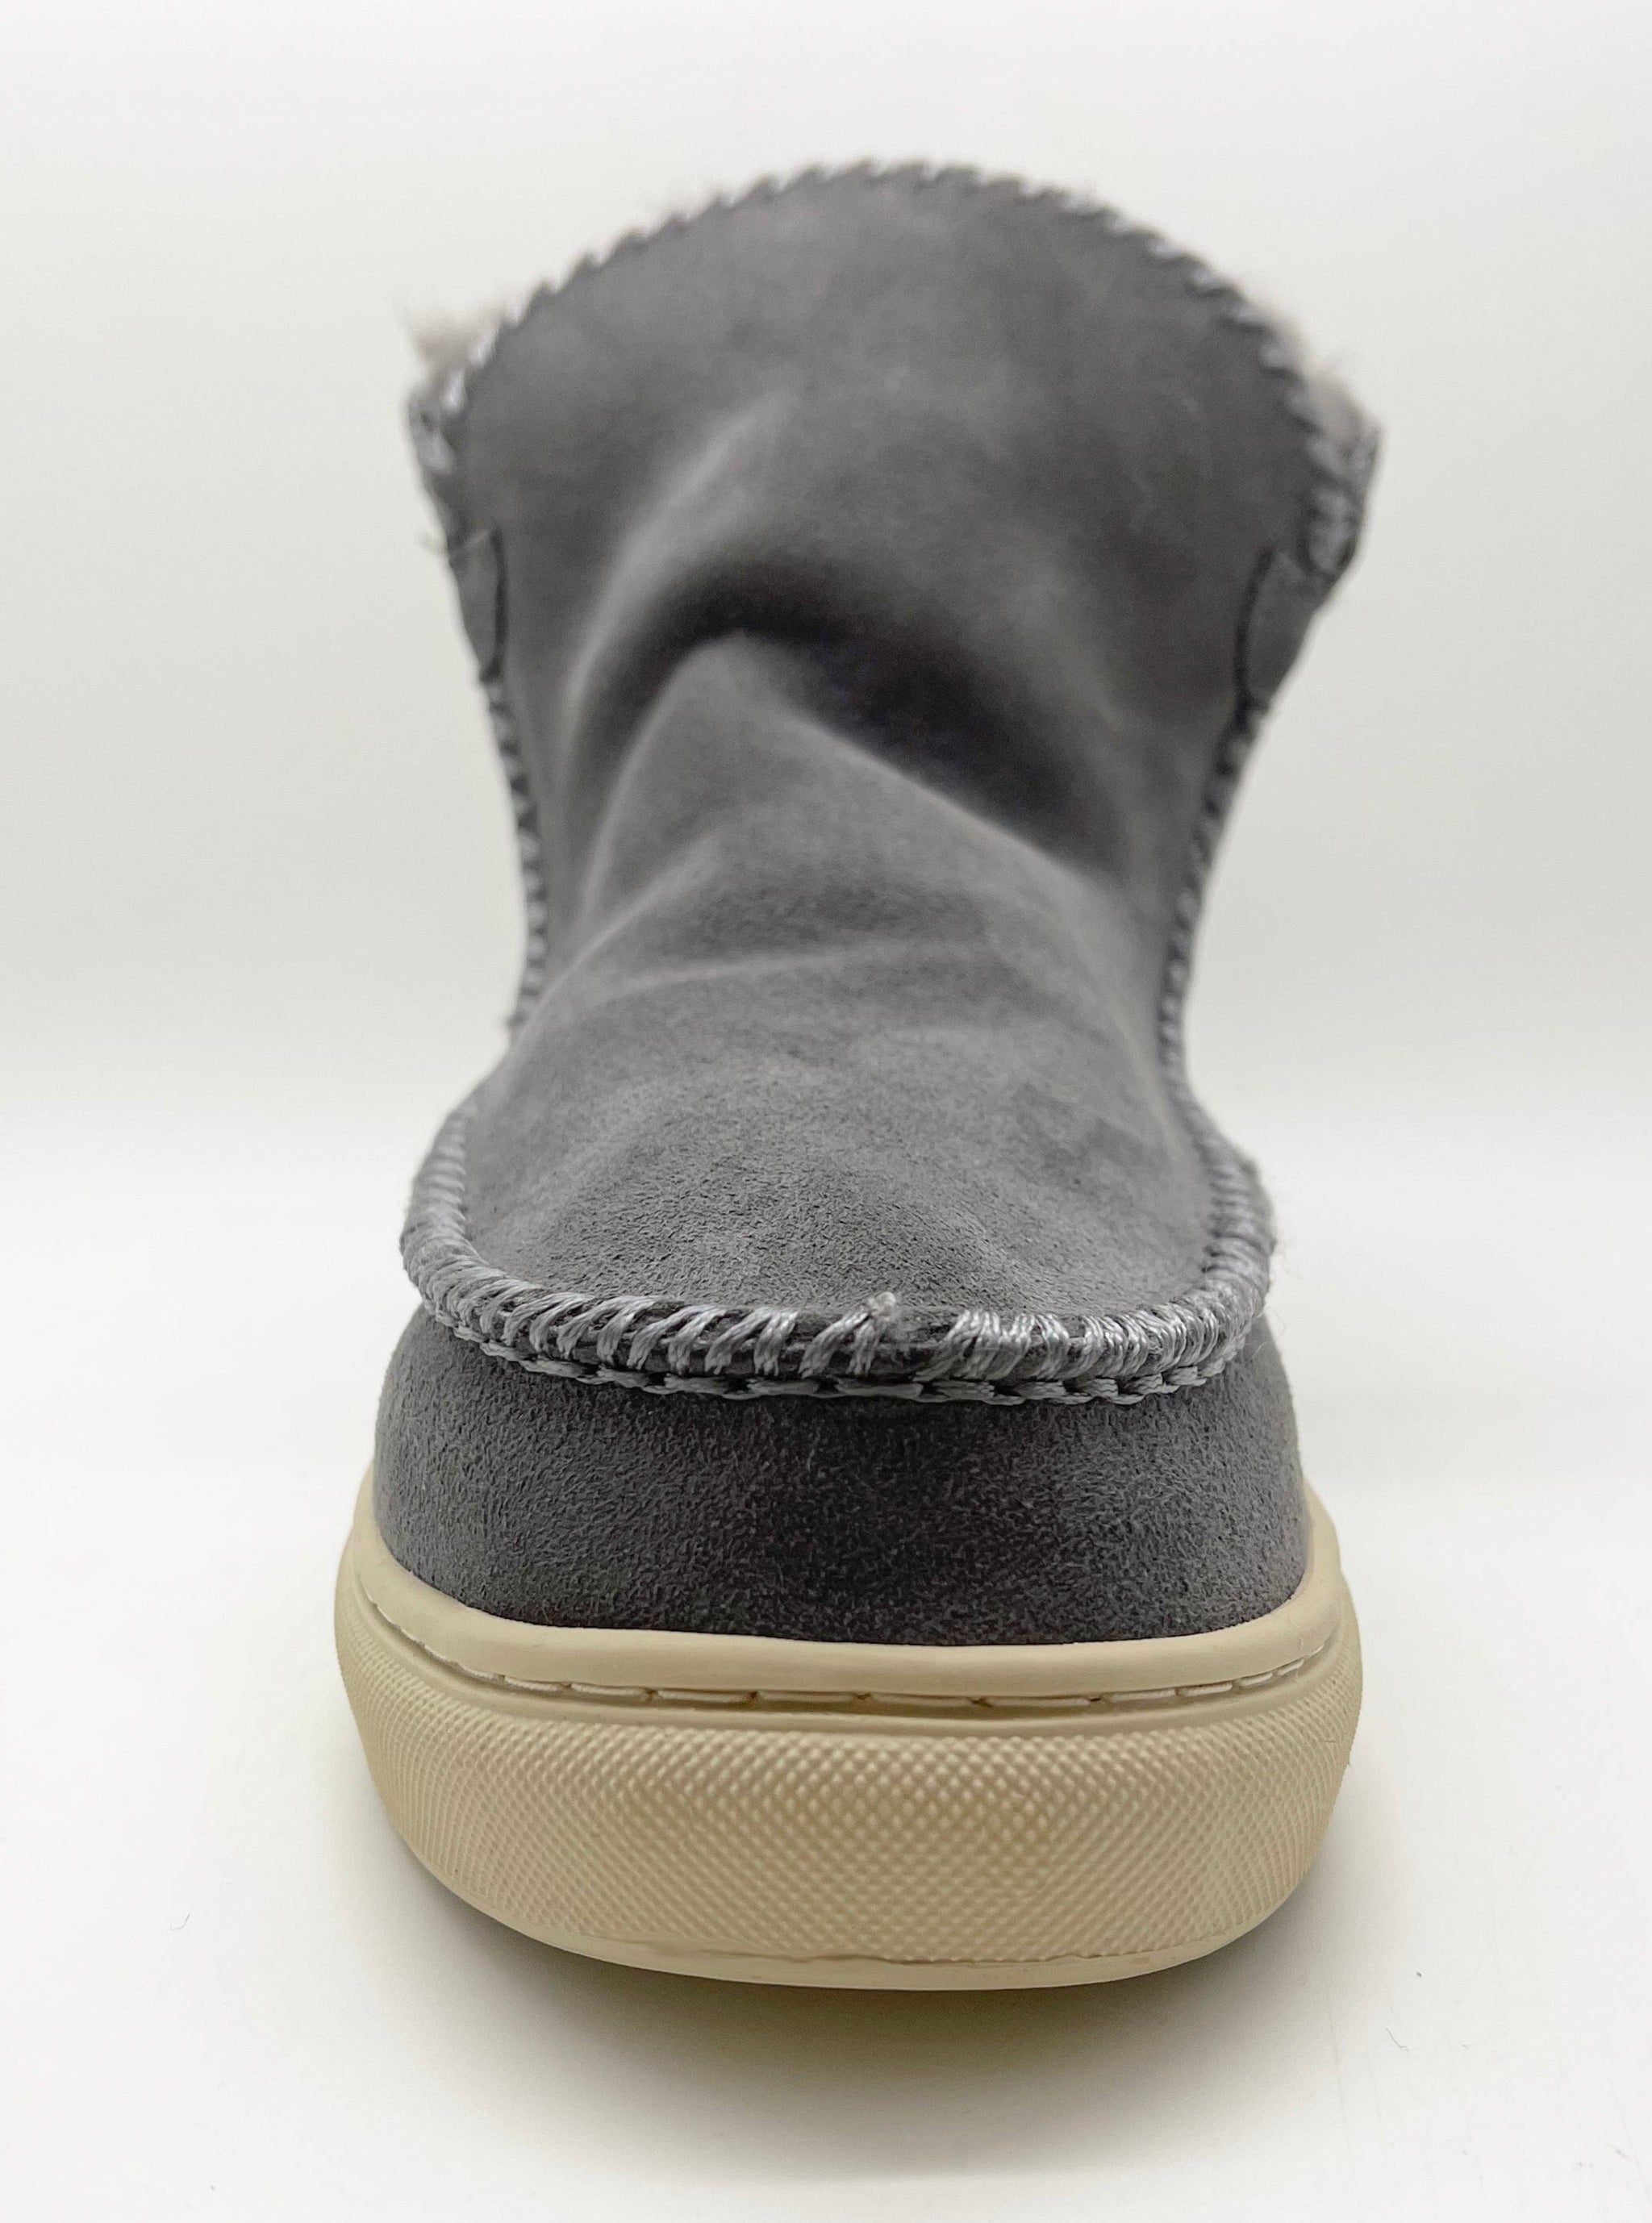 NAT 2 calzado thies 1856 ® Sneakerboot 2 gris oscuro (W) moda sostenible moda ética